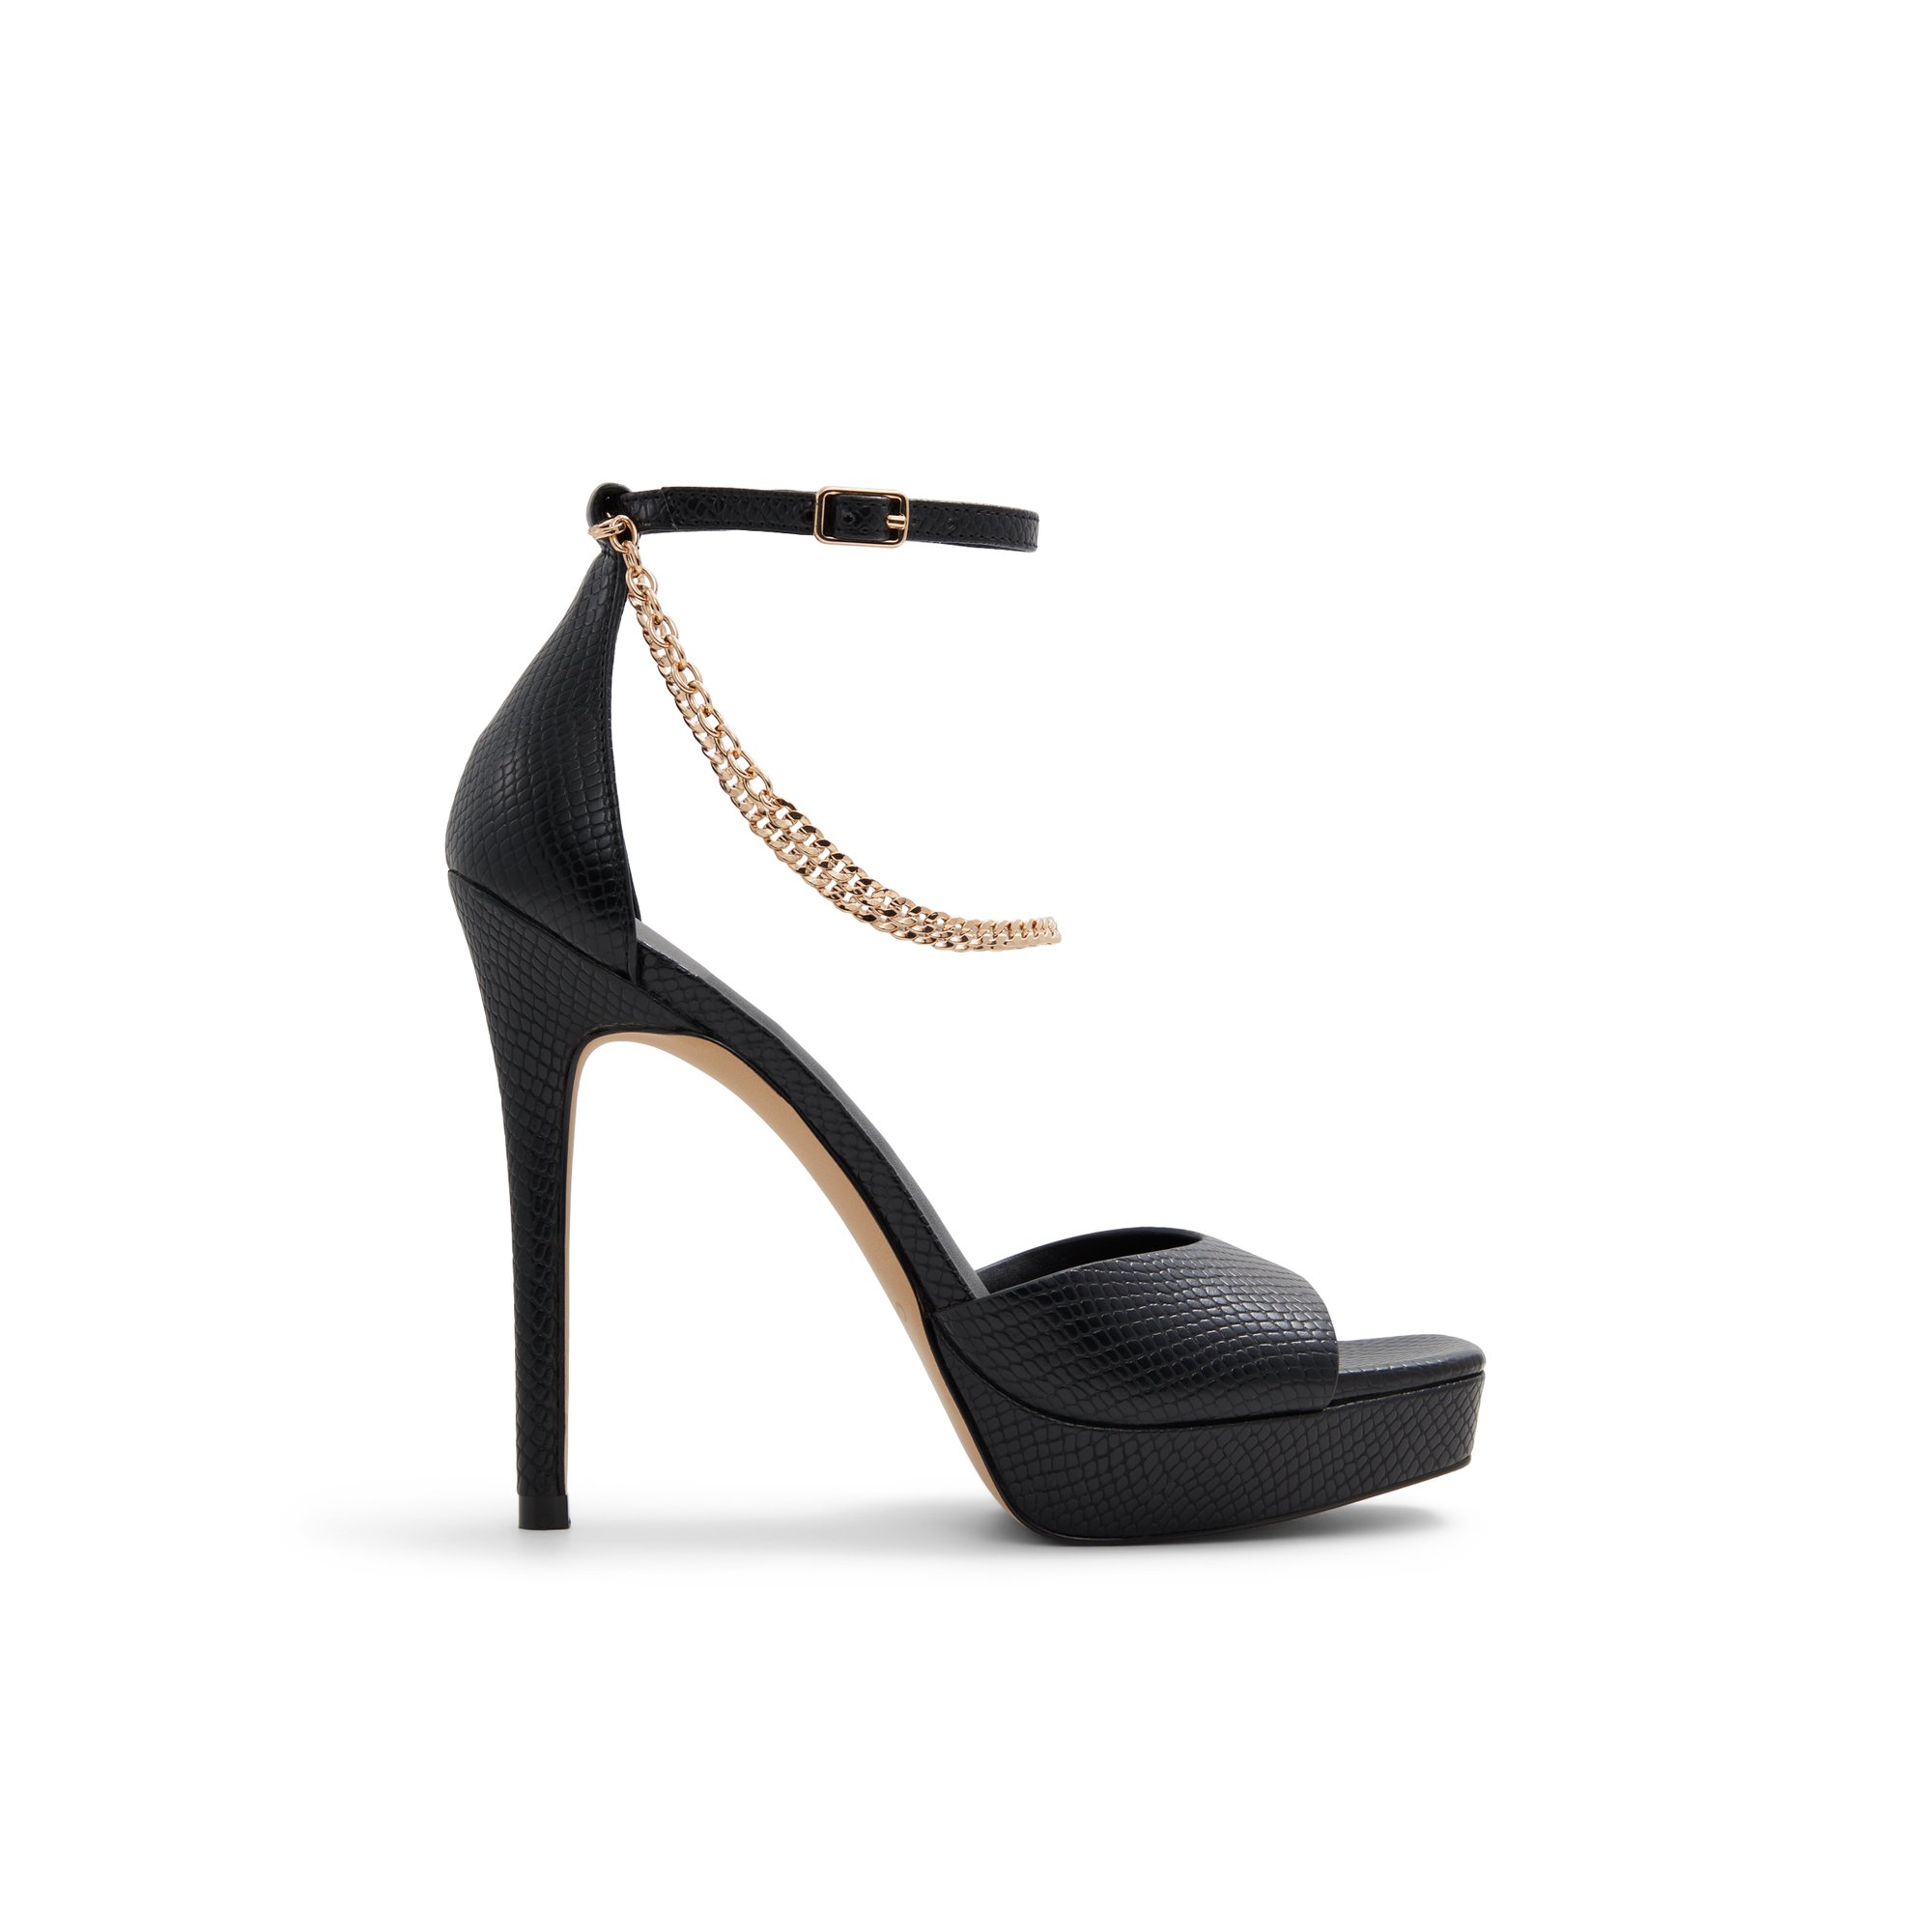 ALDO Prisilla - Women's Strappy Sandal Sandals - Black